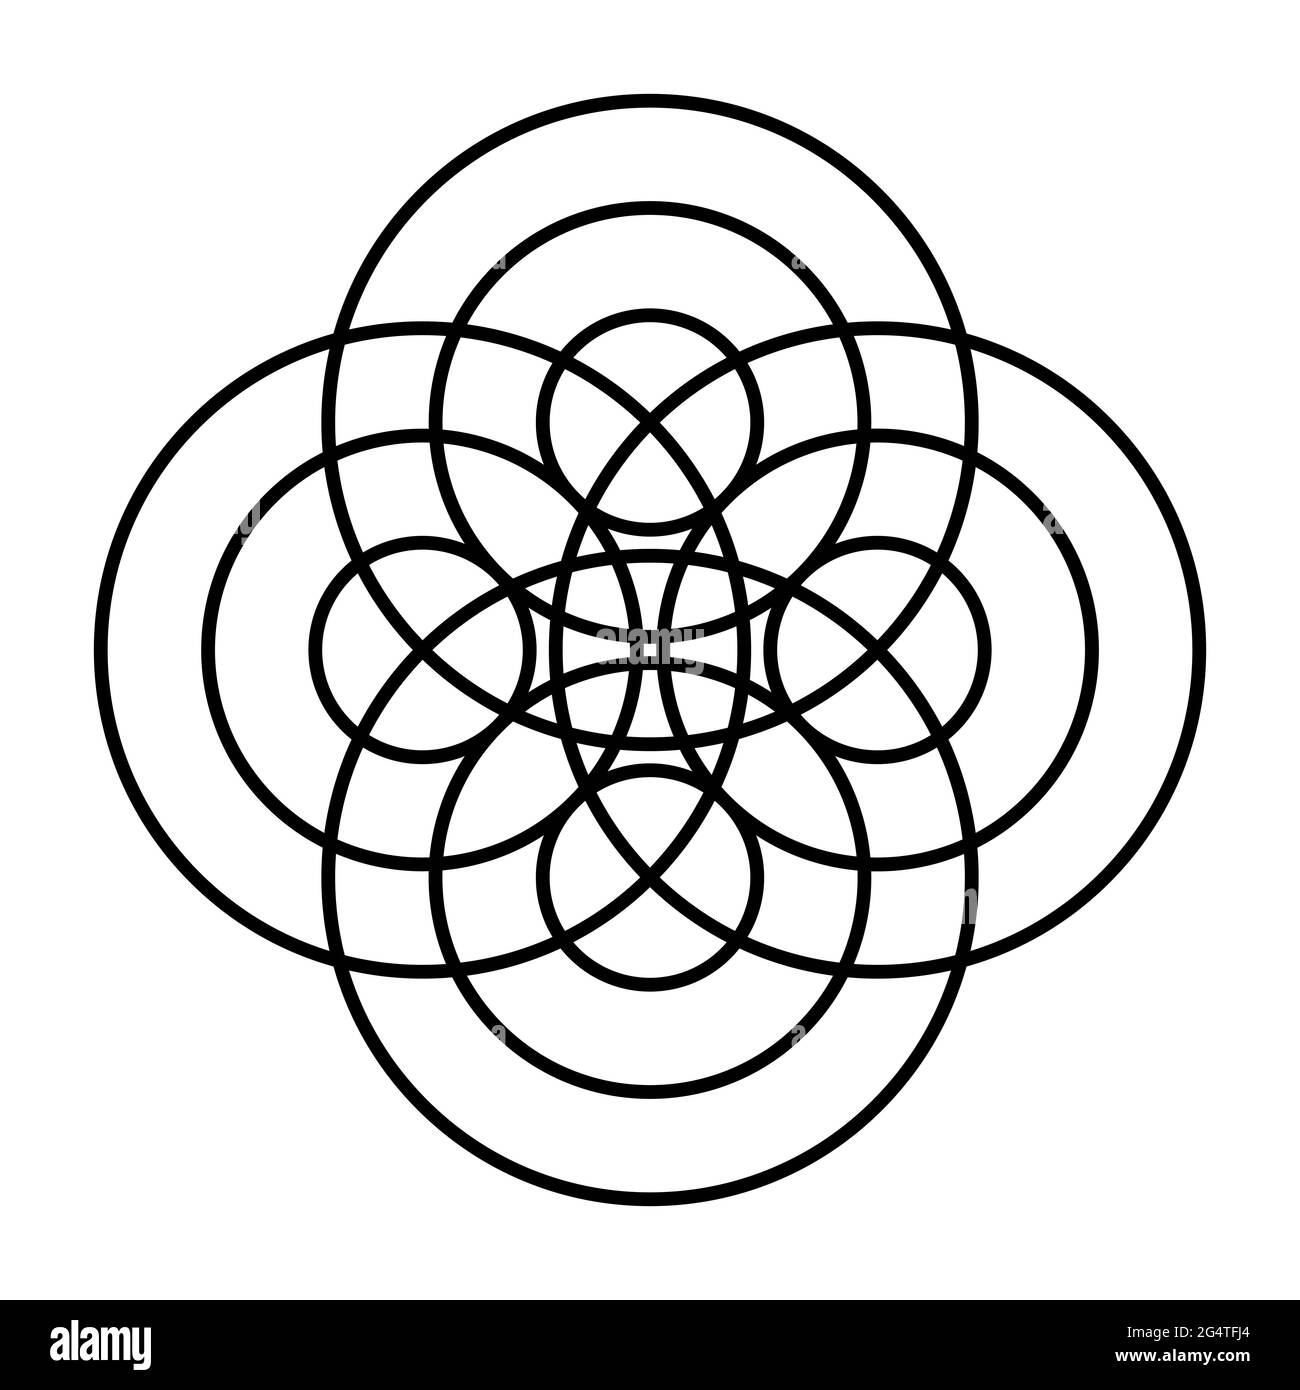 Symbol aus konzentrischen Kreisen. An vier verschiedenen Punkten breiten sich drei Wellen konzentrisch aus, ähnlich wie Wasserwellen, und führen zu einem Mandala. Stockfoto